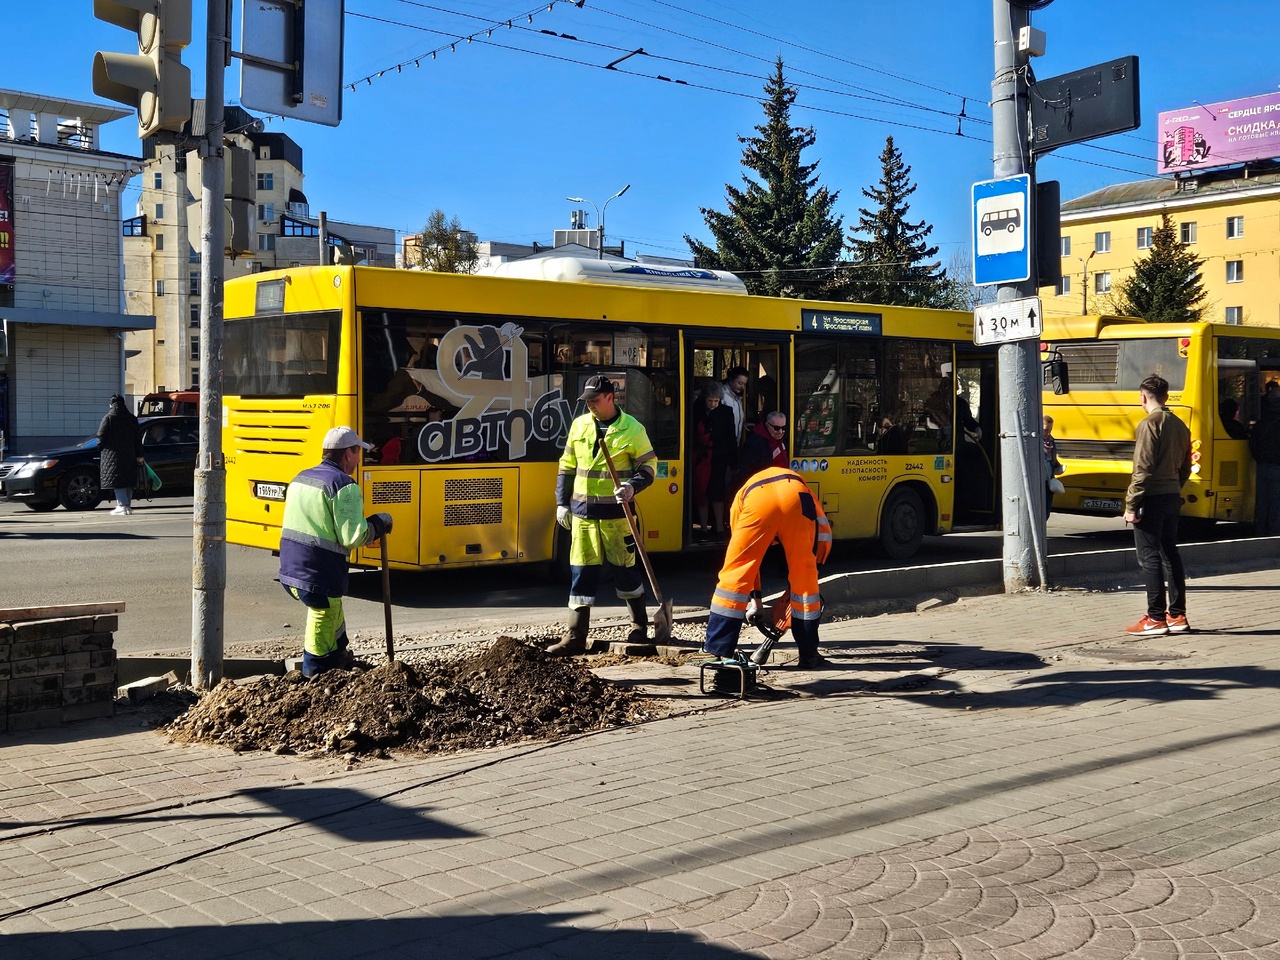 Ярославцы жалуются на грязь в салонах автобусов